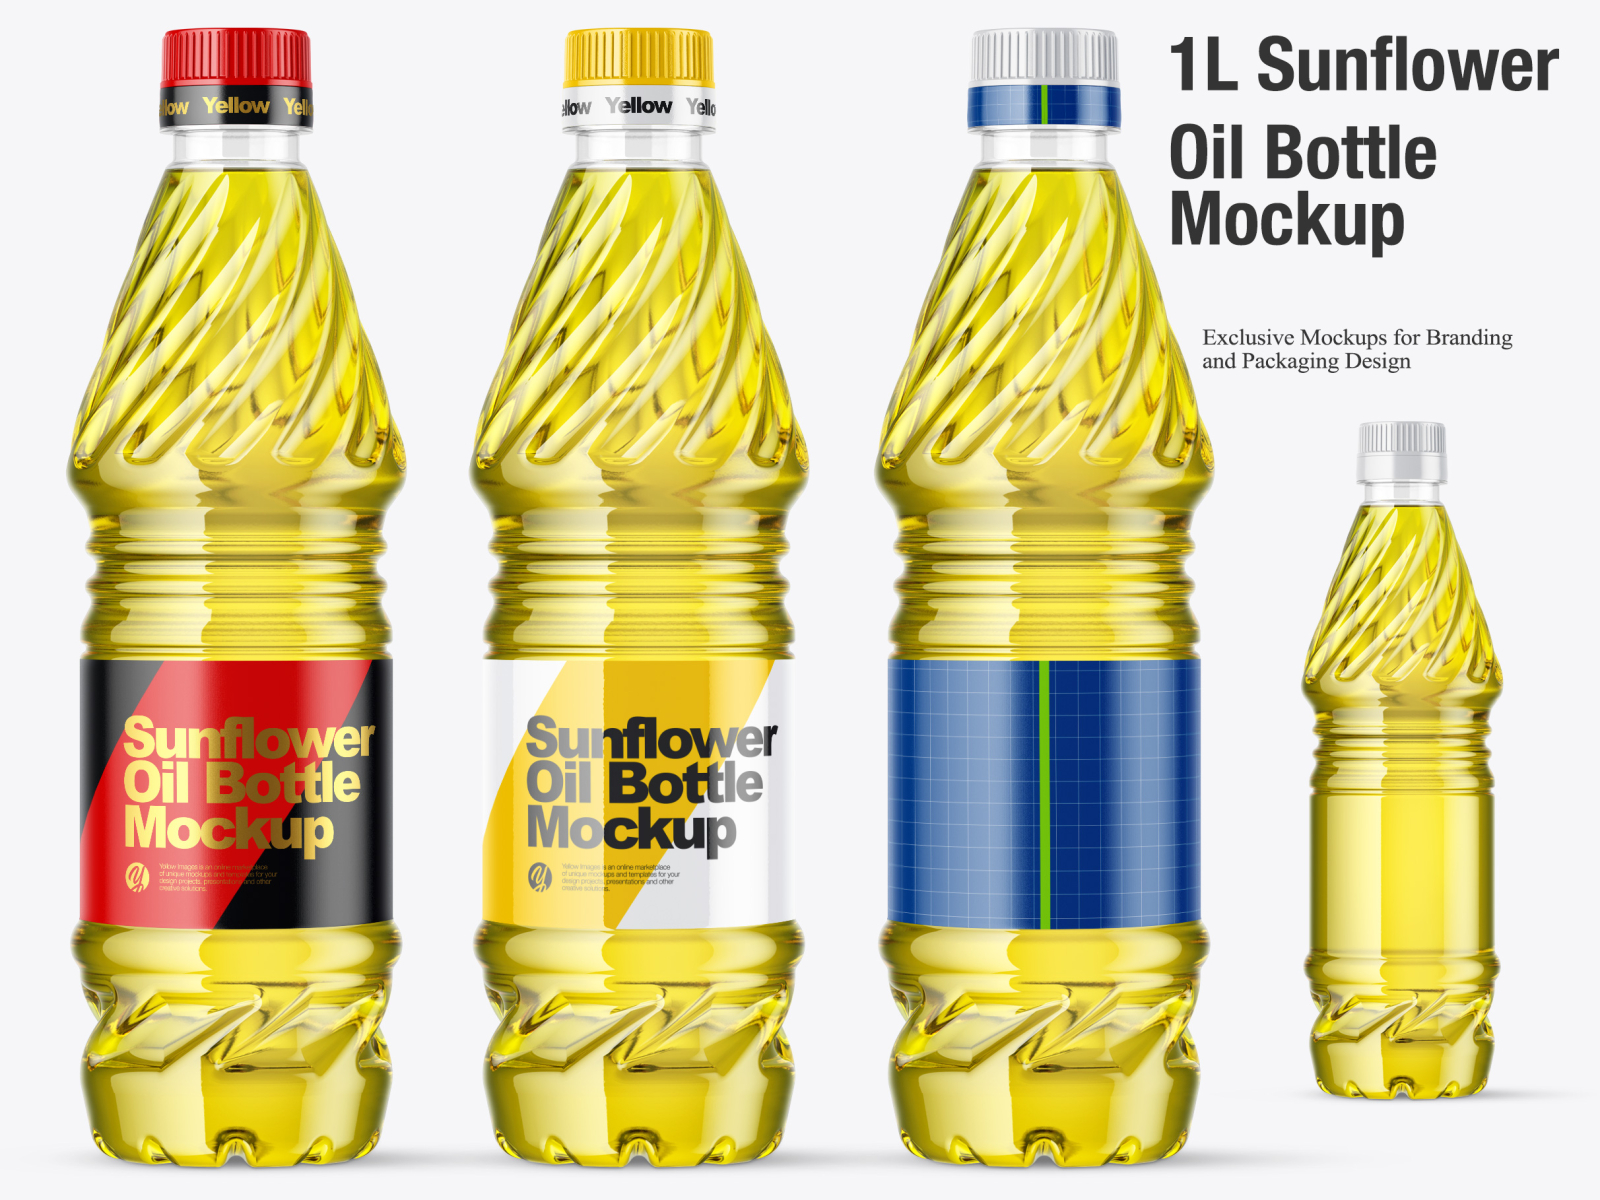 1L Sunflower Oil Bottle Mockup by Oleksandr Hlubokyi on Dribbble